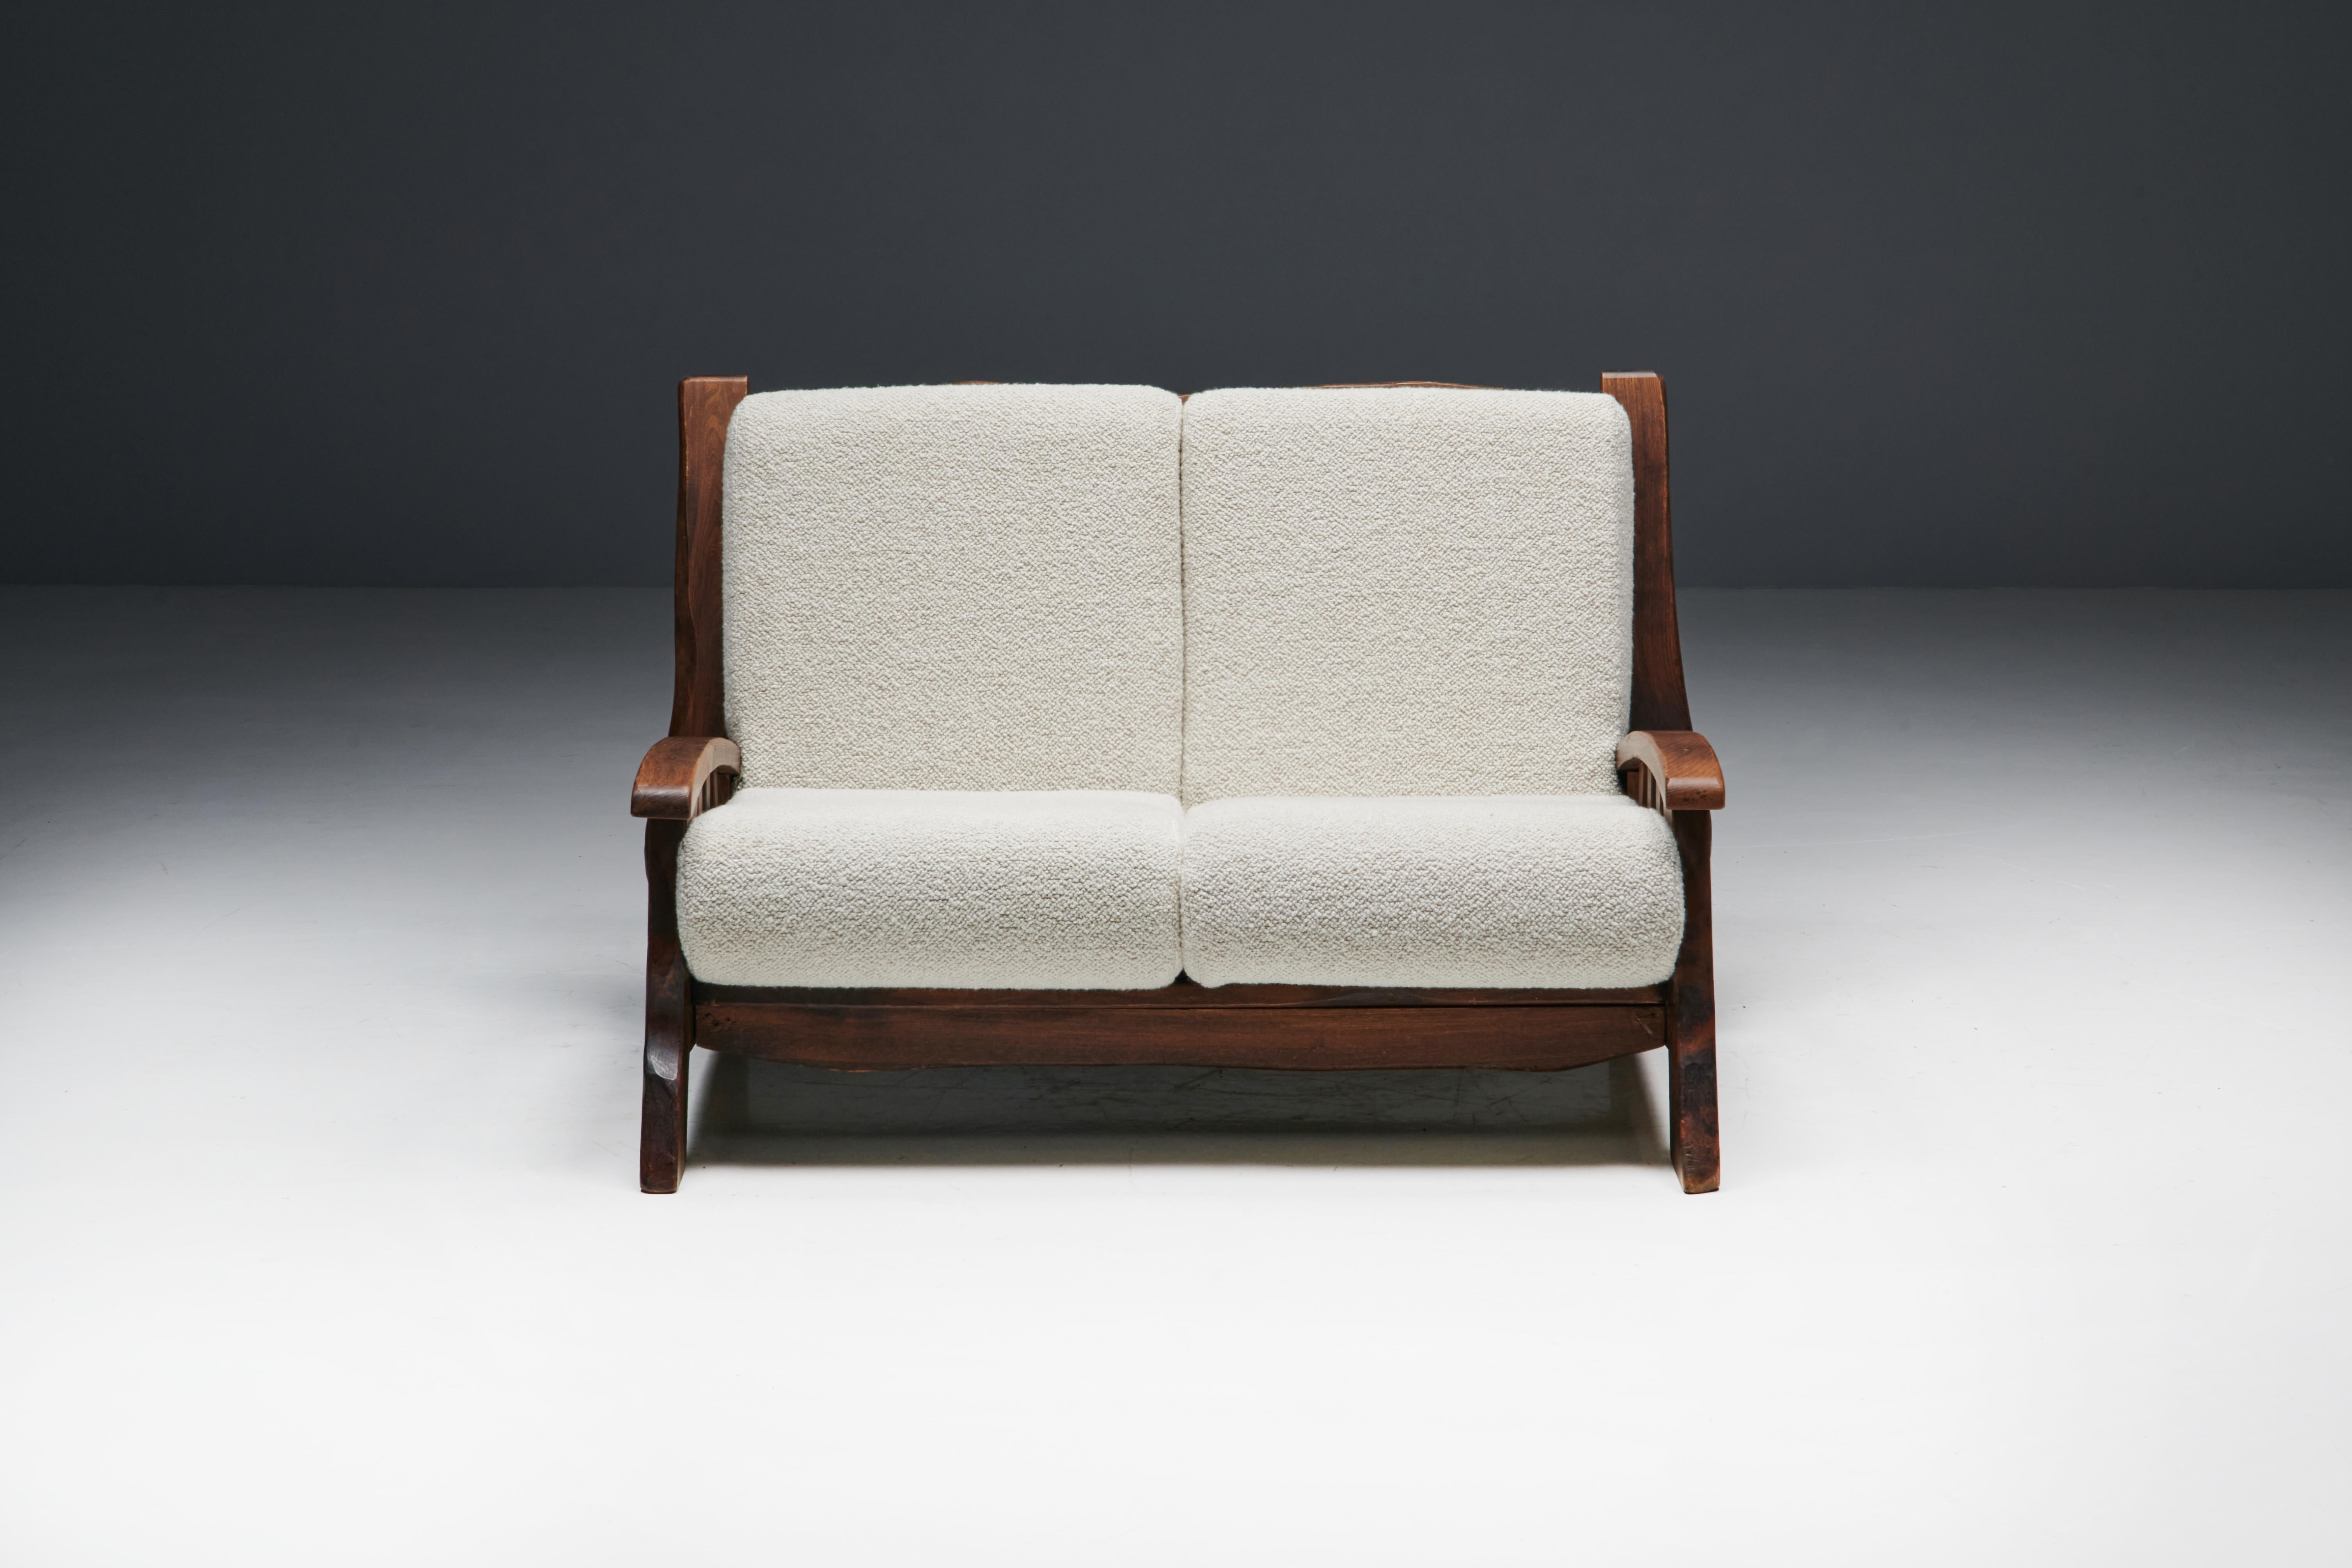 Chalet-Sofa aus Nussbaum, ein zeitloses Stück, inspiriert vom rustikalen modernen Design der 1960er Jahre in der Schweiz. Dieses mit Wabi-Sabi-Ethos gefertigte Sofa mit Walnussrahmen strahlt Wärme und Gemütlichkeit aus und ist die perfekte Ergänzung